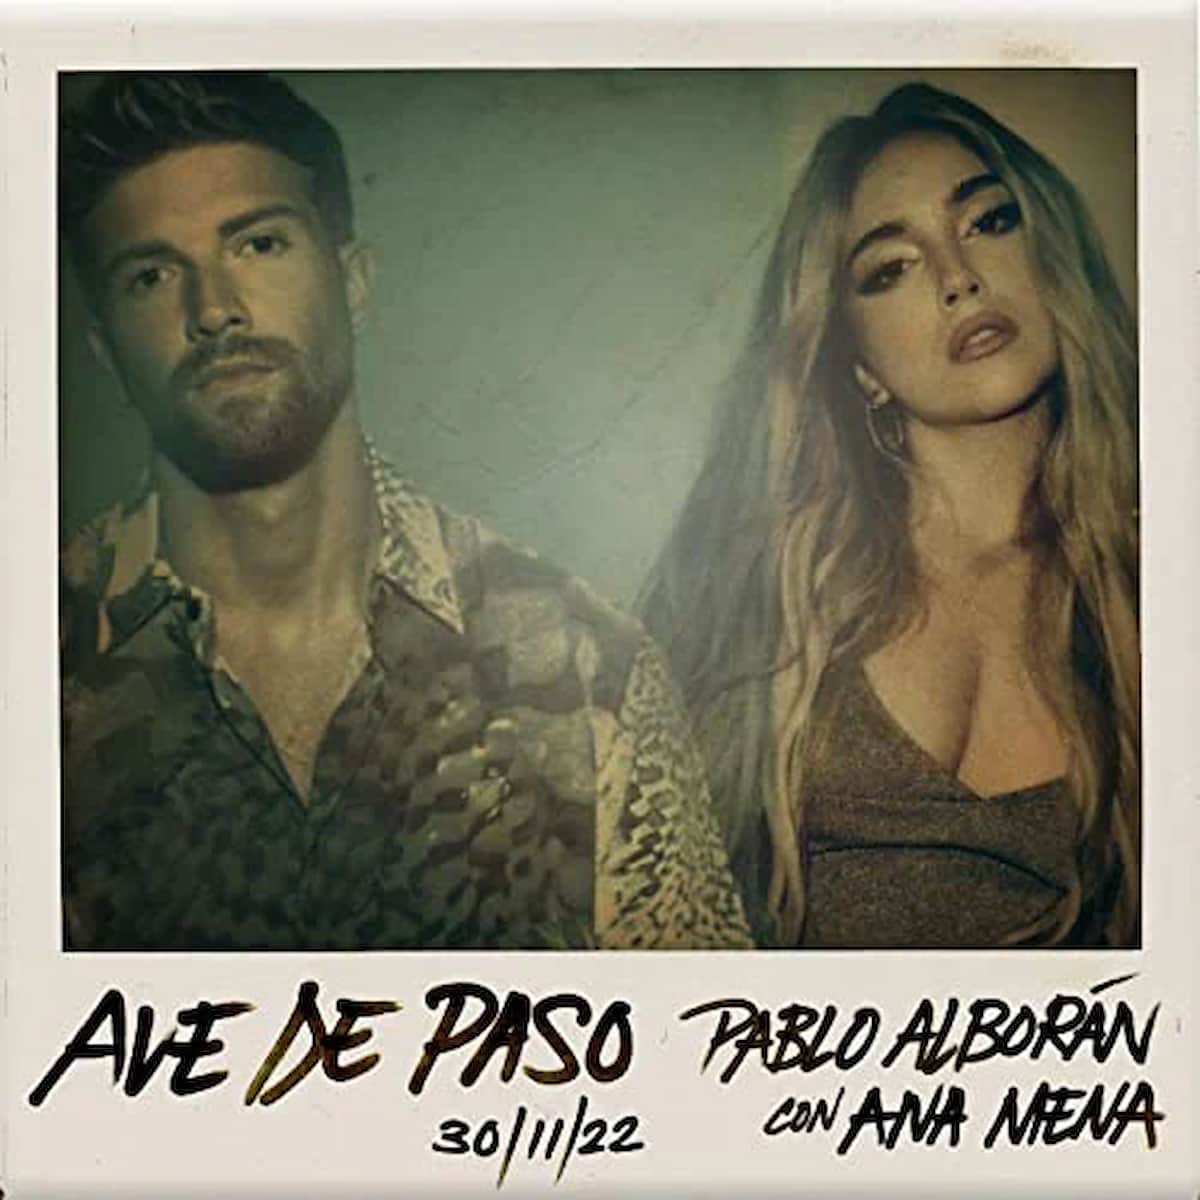 Pablo Alboran & Ana Mena “Ave de paso” Latin-Pop-Song & Video veröffentlicht